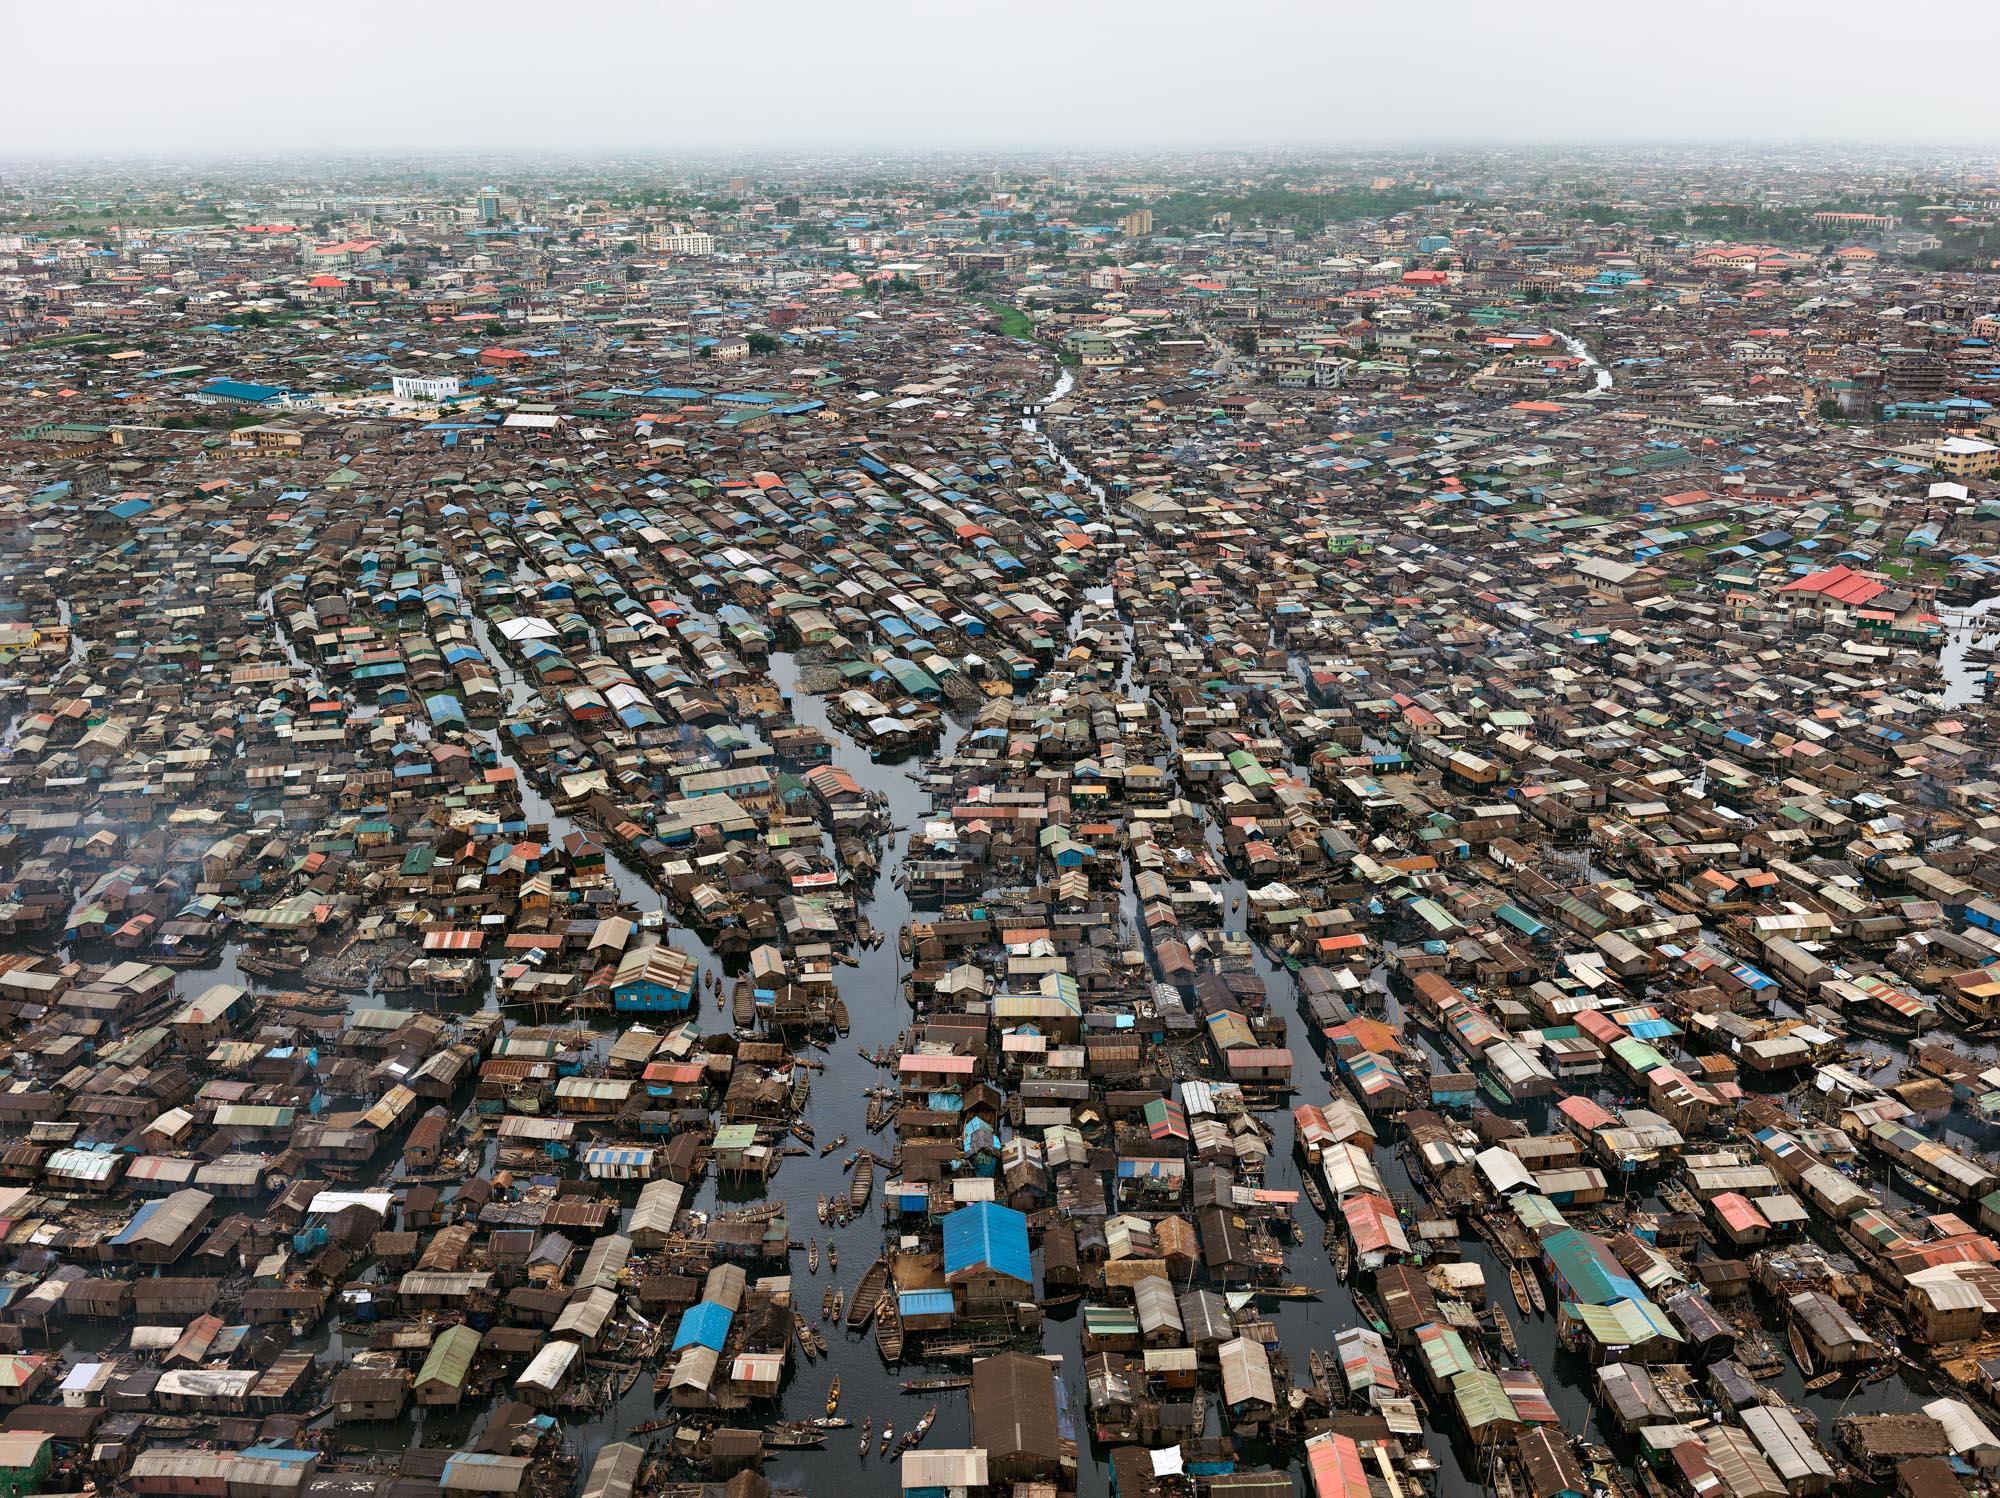 Mokoko #1, Lagos, NIgeria, 2016. @Edward Burtynsky